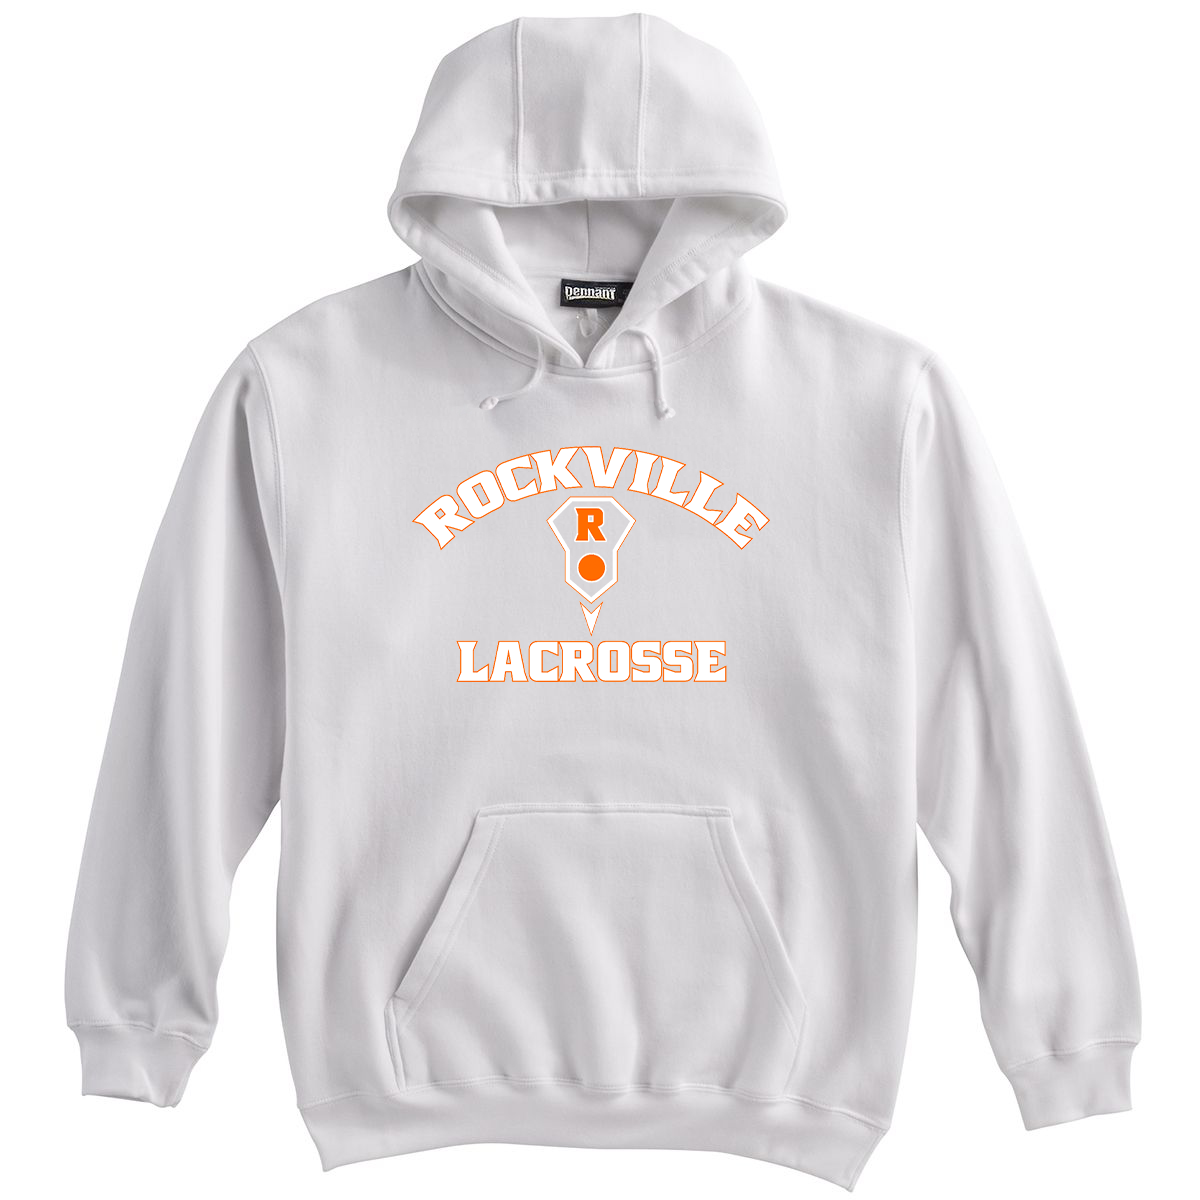 Rockville HS Girls Lacrosse Sweatshirt